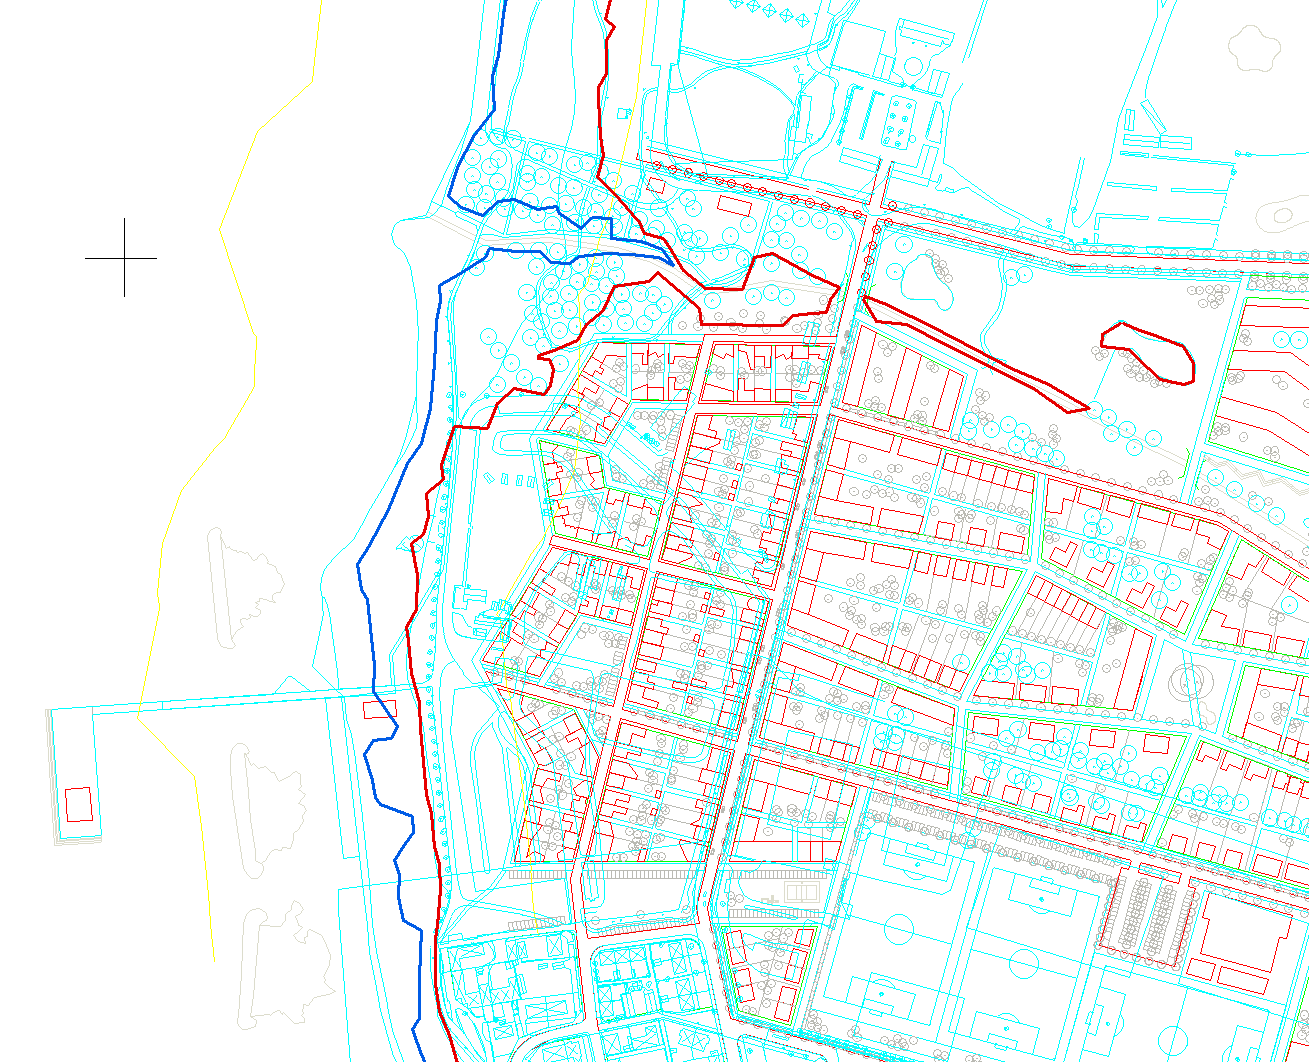 Cykelvägen kommer delvis att ligga under framtida medelhavsnivå och likaså stora delar av hamnområdet (se nedan).